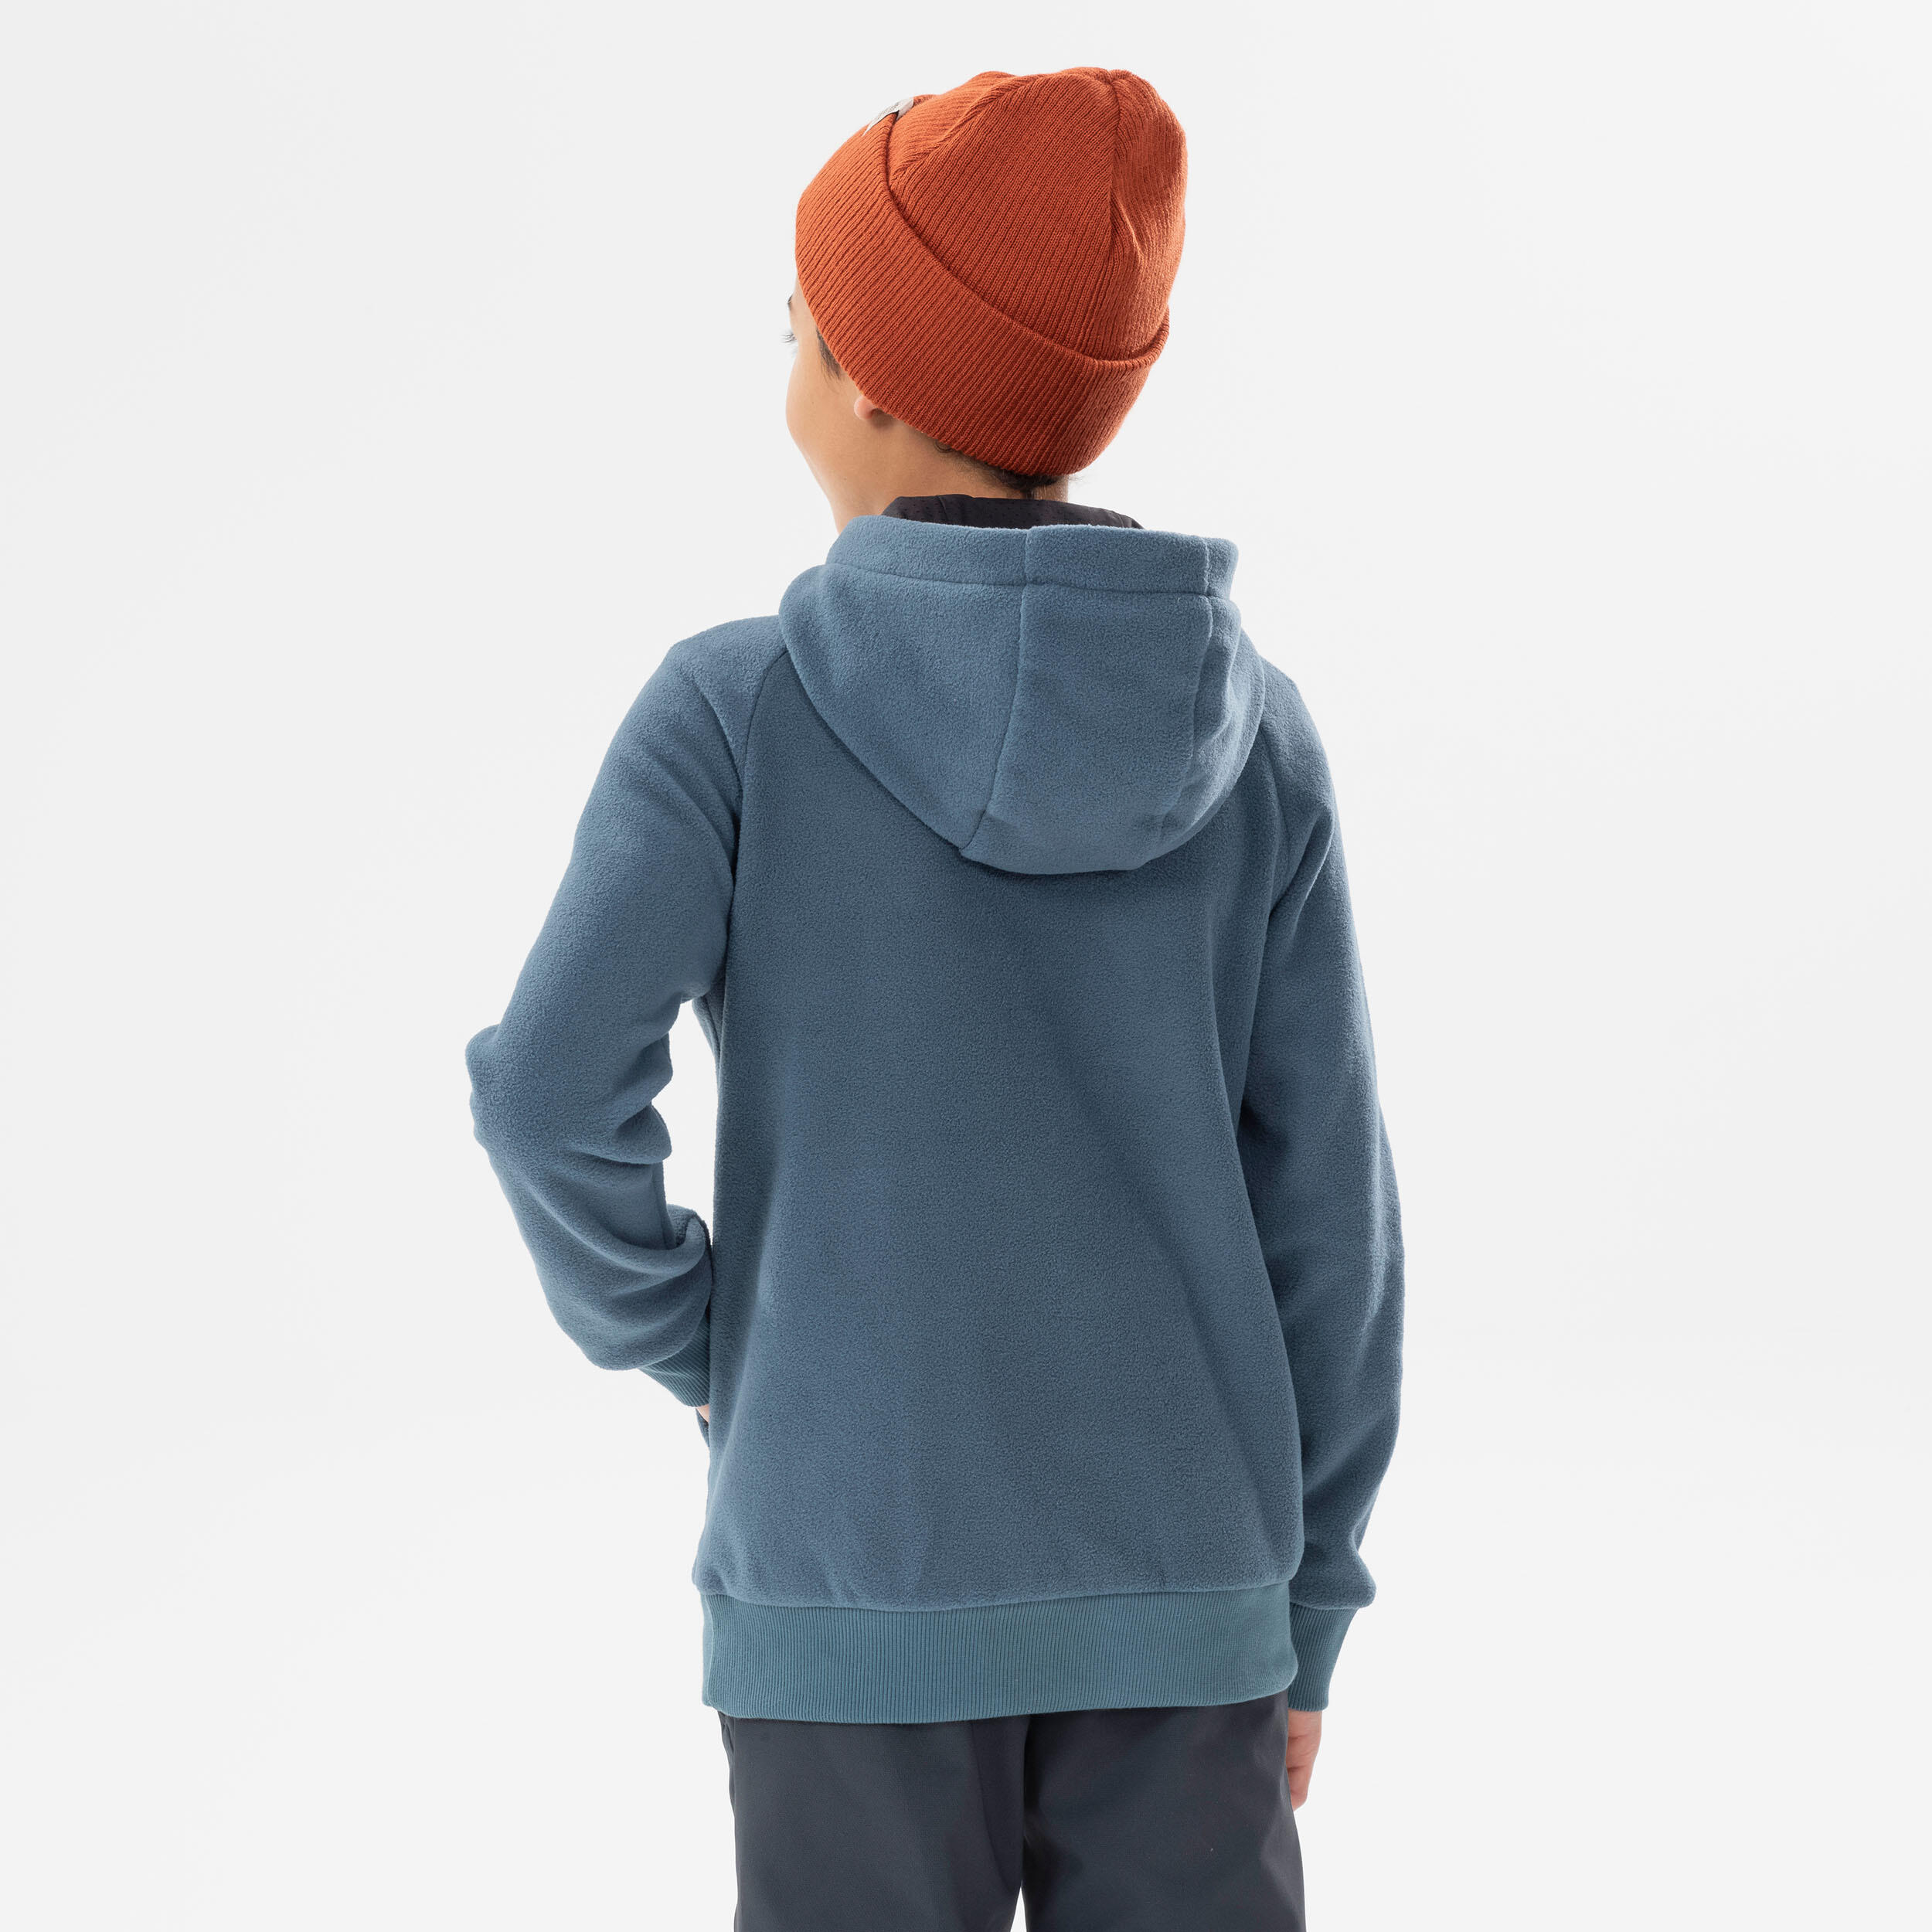 Boys’ Fleece Hiking Sweatshirt Aged 7-15 - Dark Grey 6/8